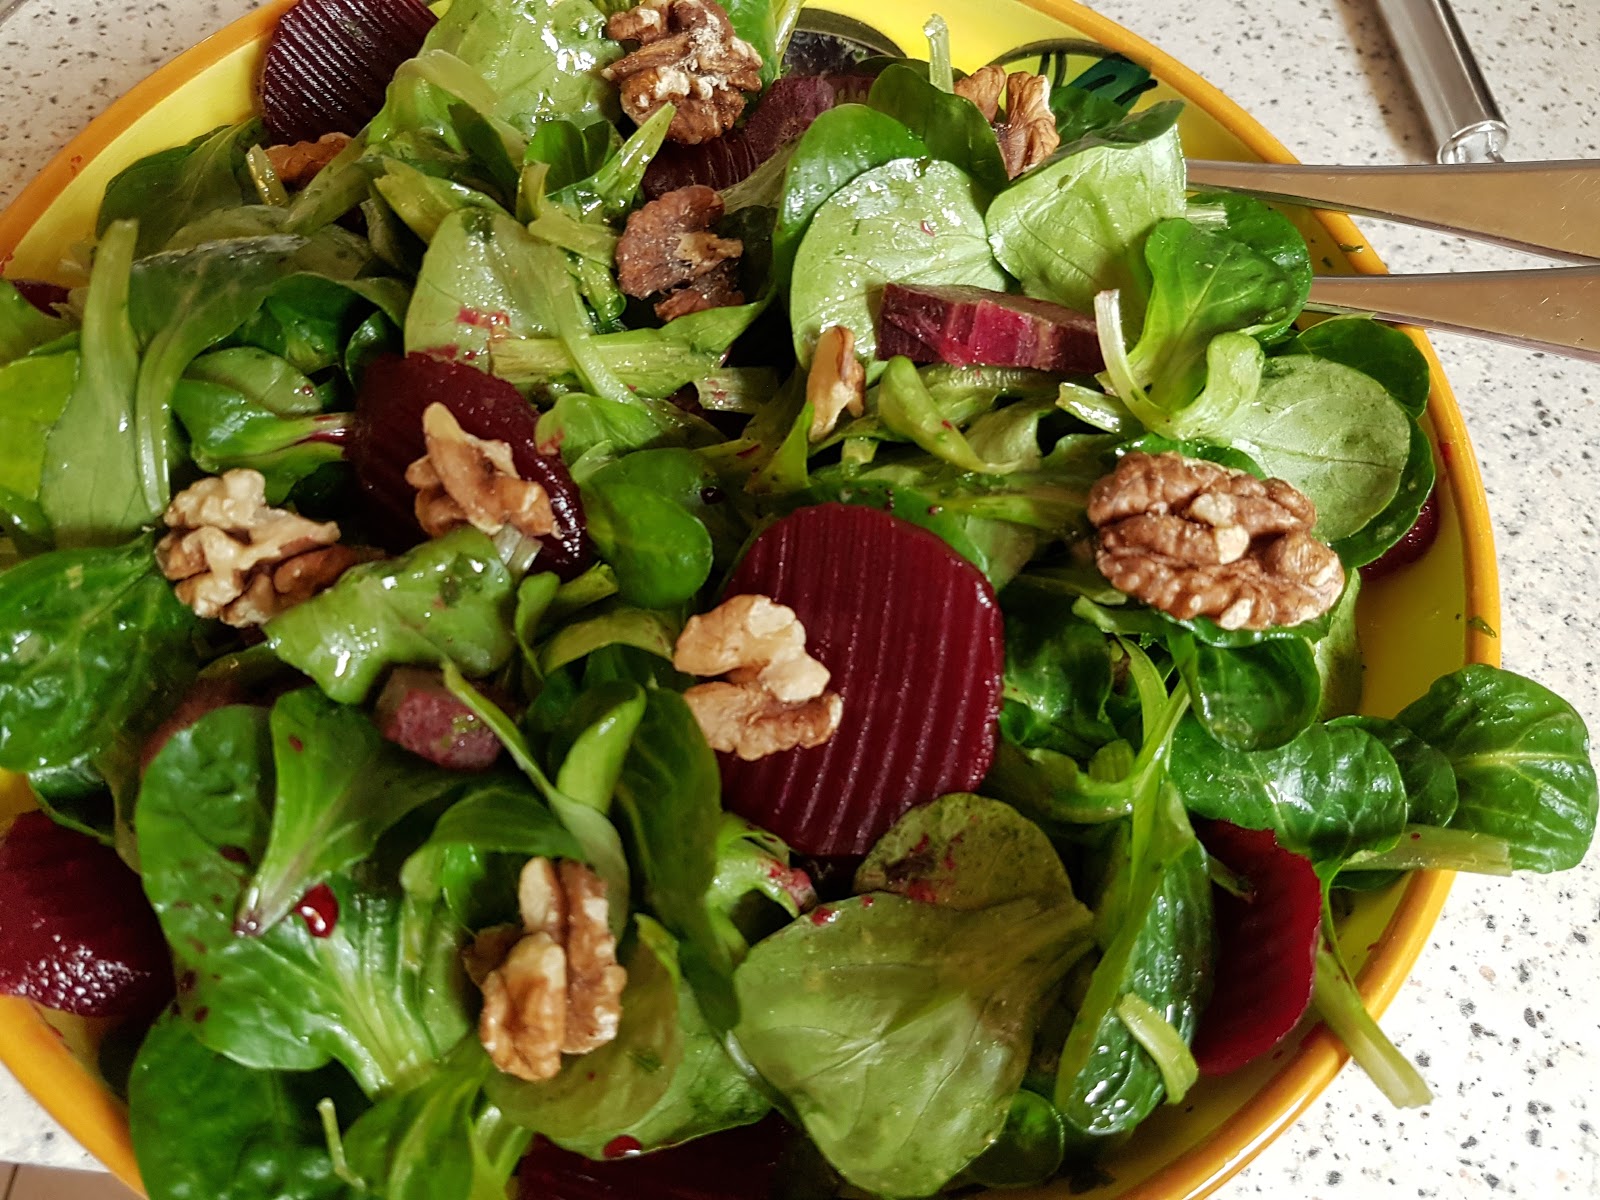 Aus dem Lameng: Feldsalat mit Rote Beete, schwarzen Möhren und Walnüssen